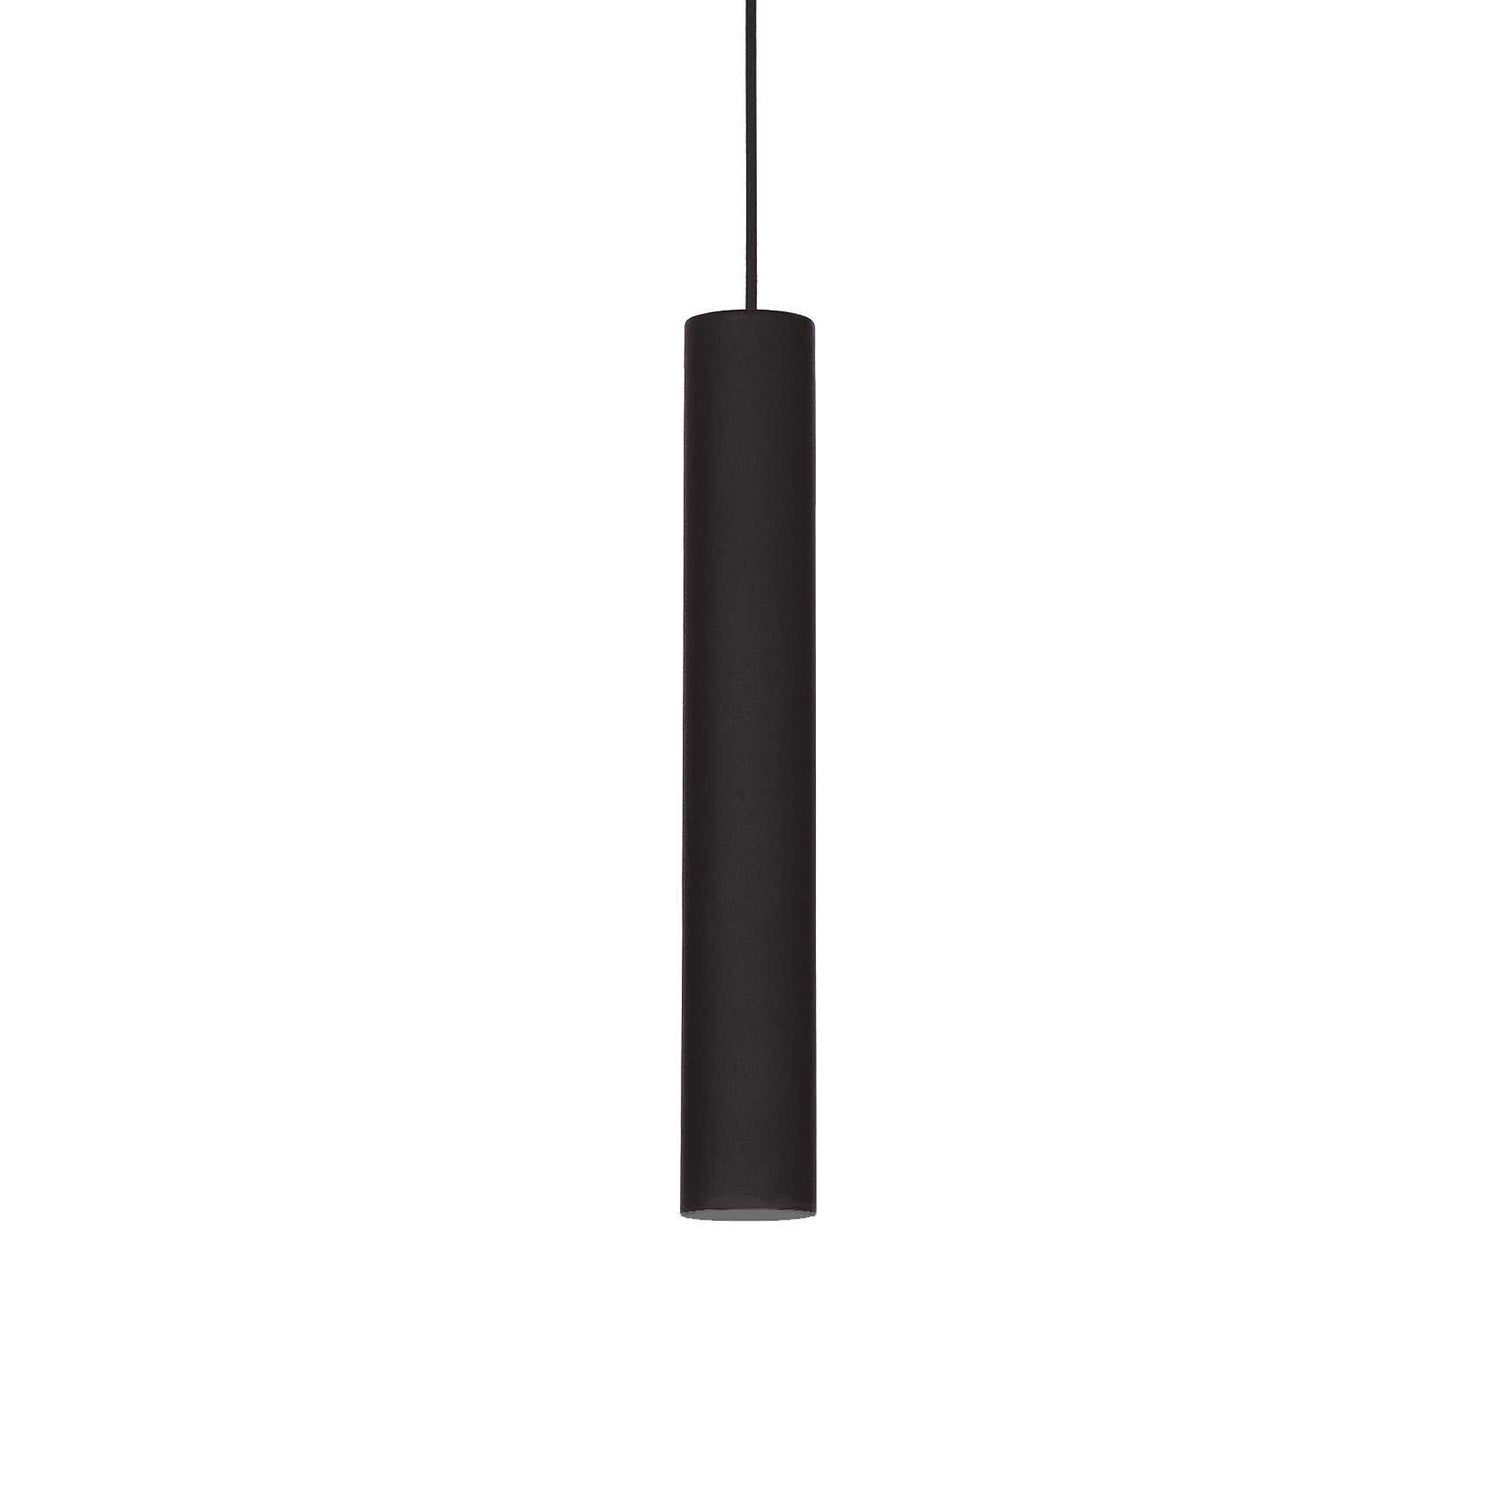 LOOK - Tube pendant light in matt or shiny steel